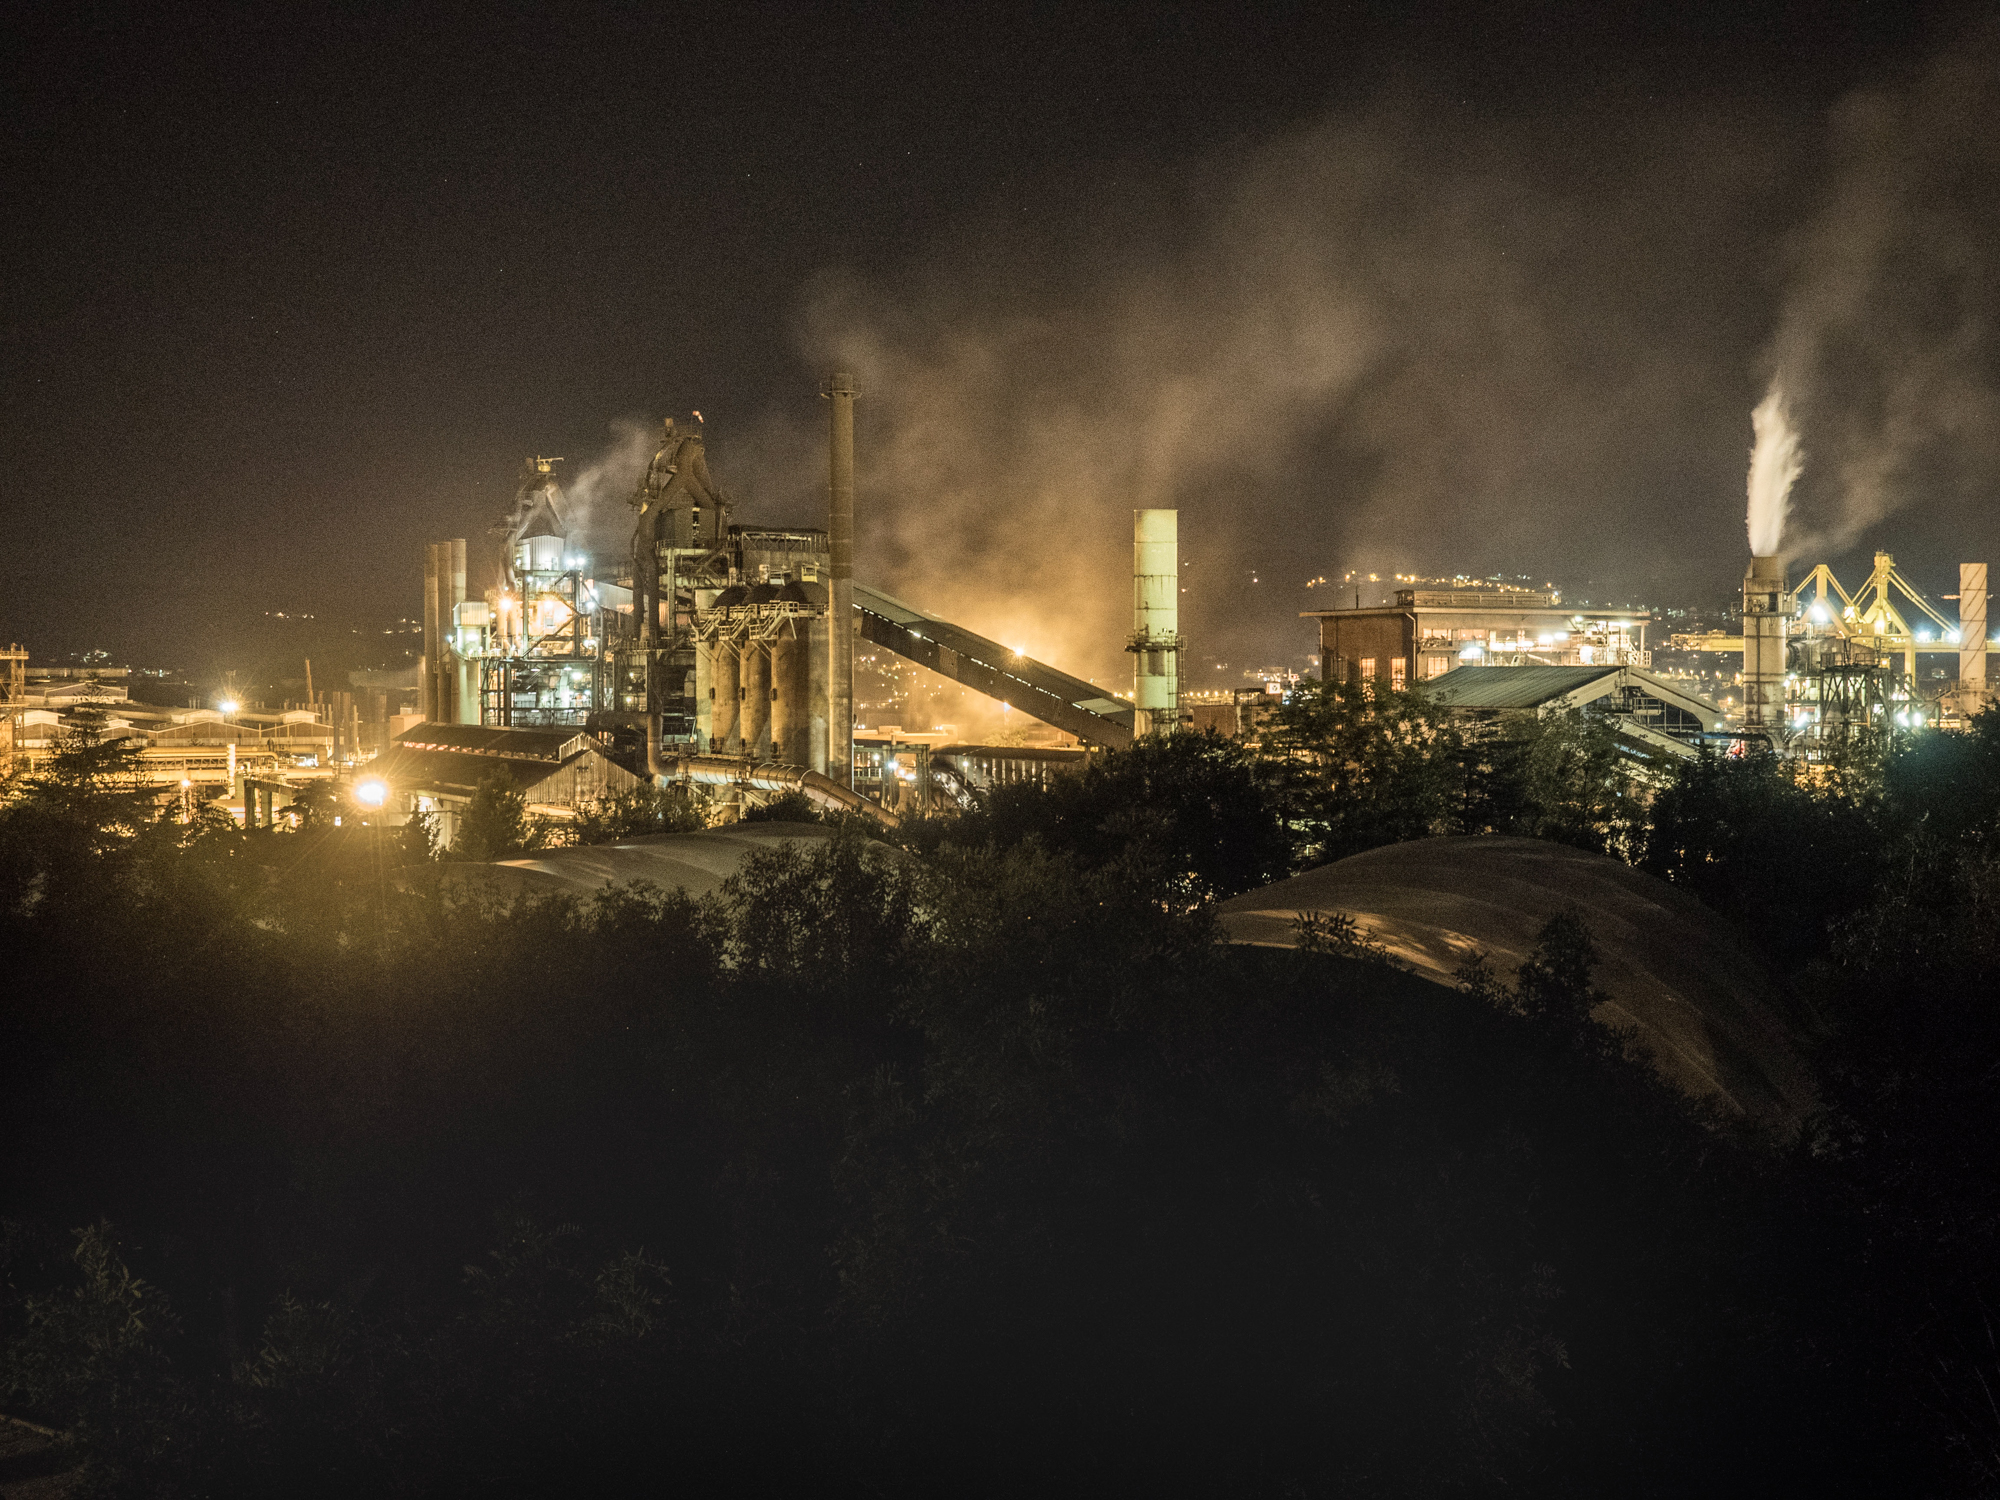  Veduta notturna dell' imponente impianto siderurgico della Ferriera di Servola , Trieste 2015. 